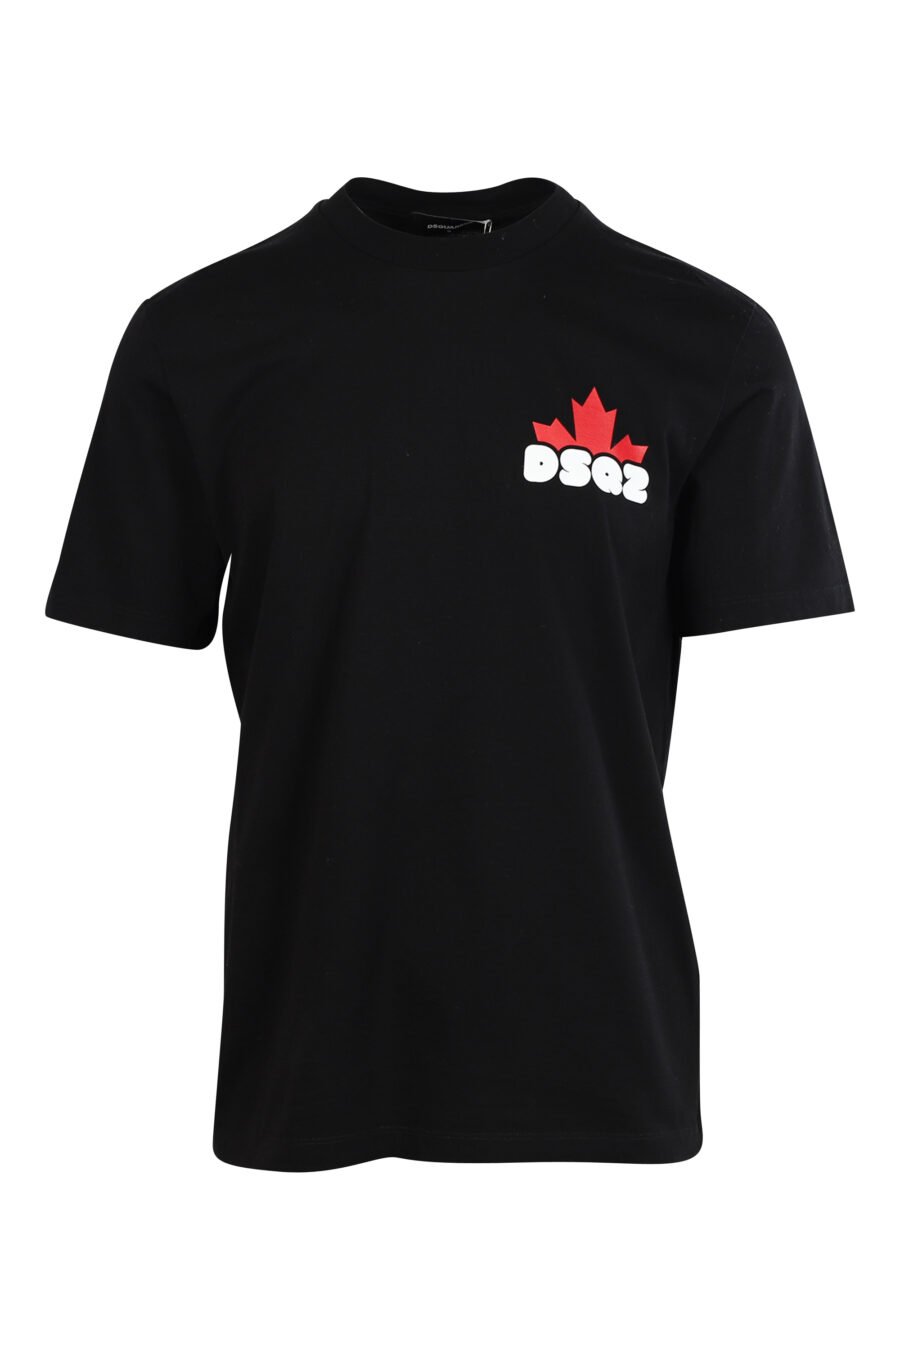 Schwarzes T-Shirt mit weißem Minilogo "bold" und orangefarbenem Blatt - 8052134990216